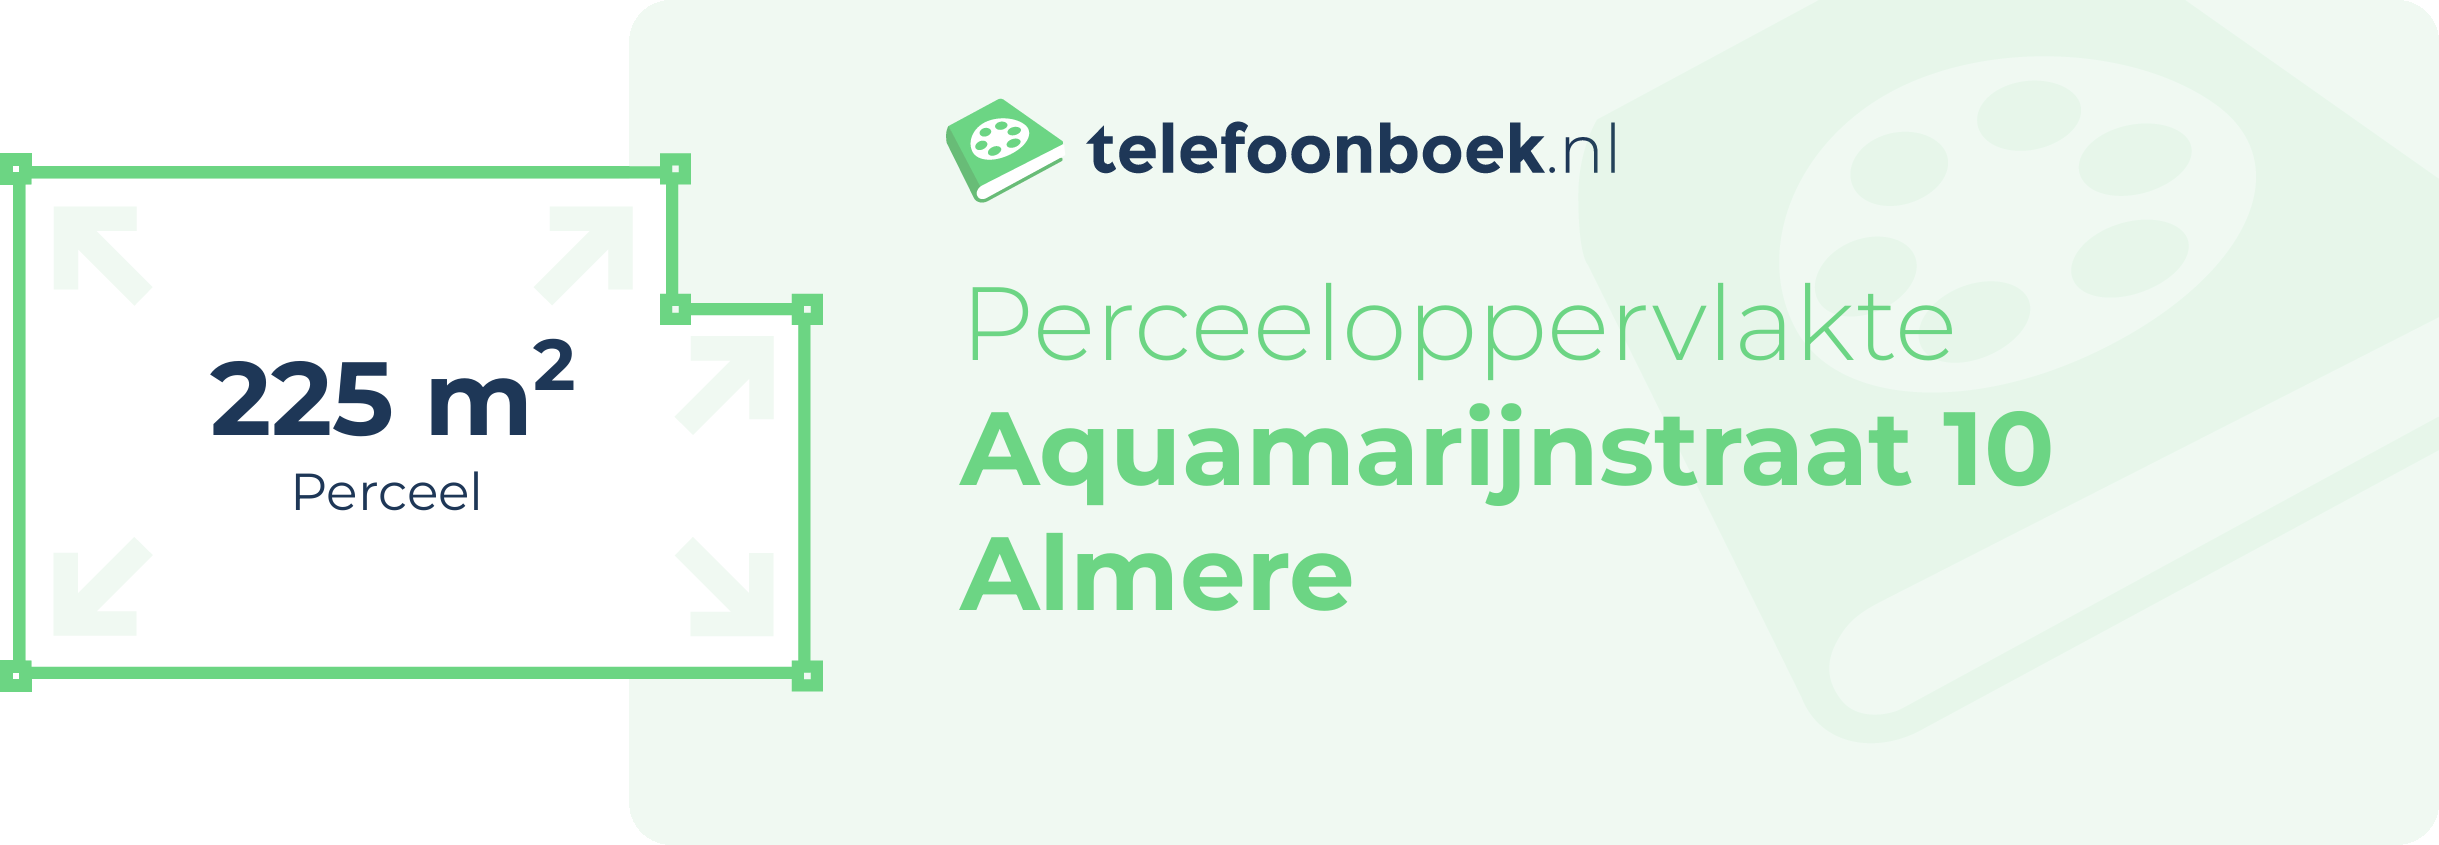 Perceeloppervlakte Aquamarijnstraat 10 Almere